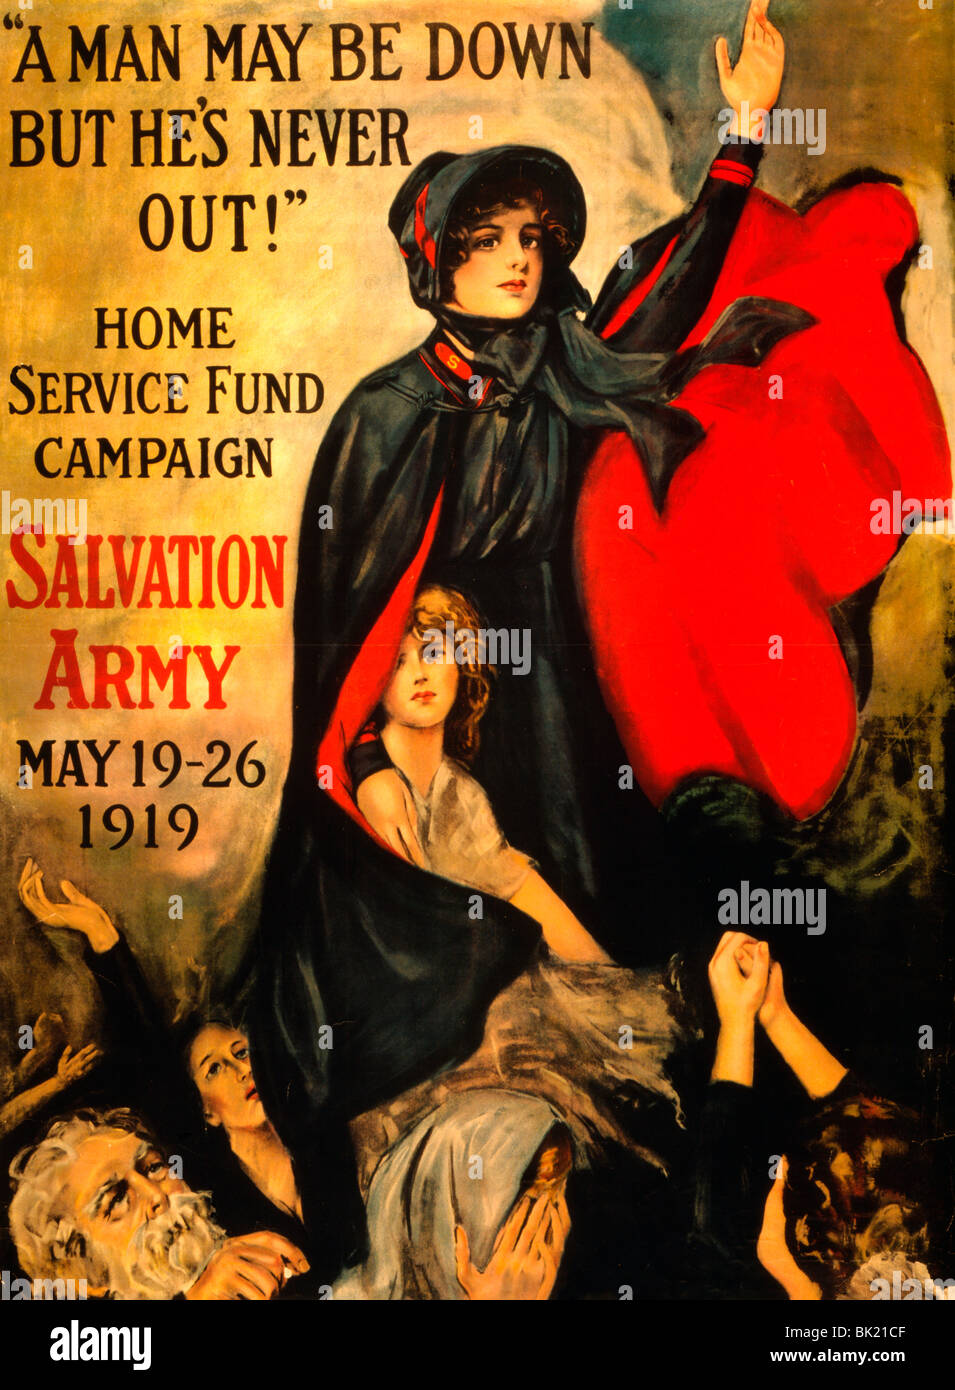 'Un homme peut être, mais il n'est jamais out !" Accueil La Campagne du Fonds de service - Armée du Salut - du 19 au 26 mai 1919 - Poster Banque D'Images